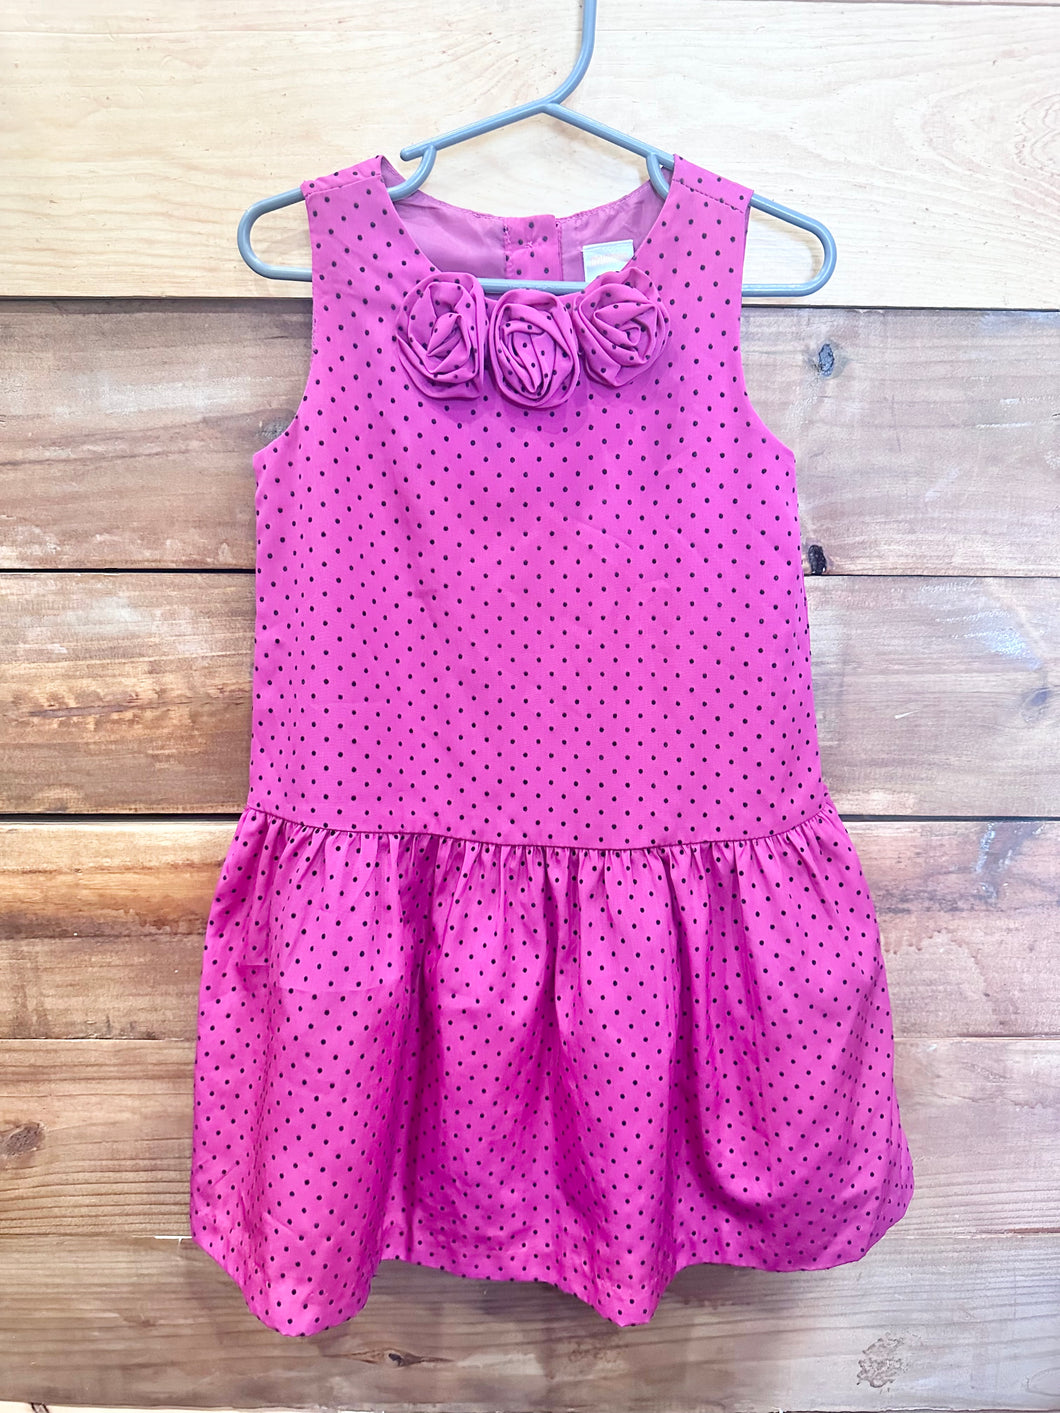 Gymboree Pink Polka Dot Dress Size 4T